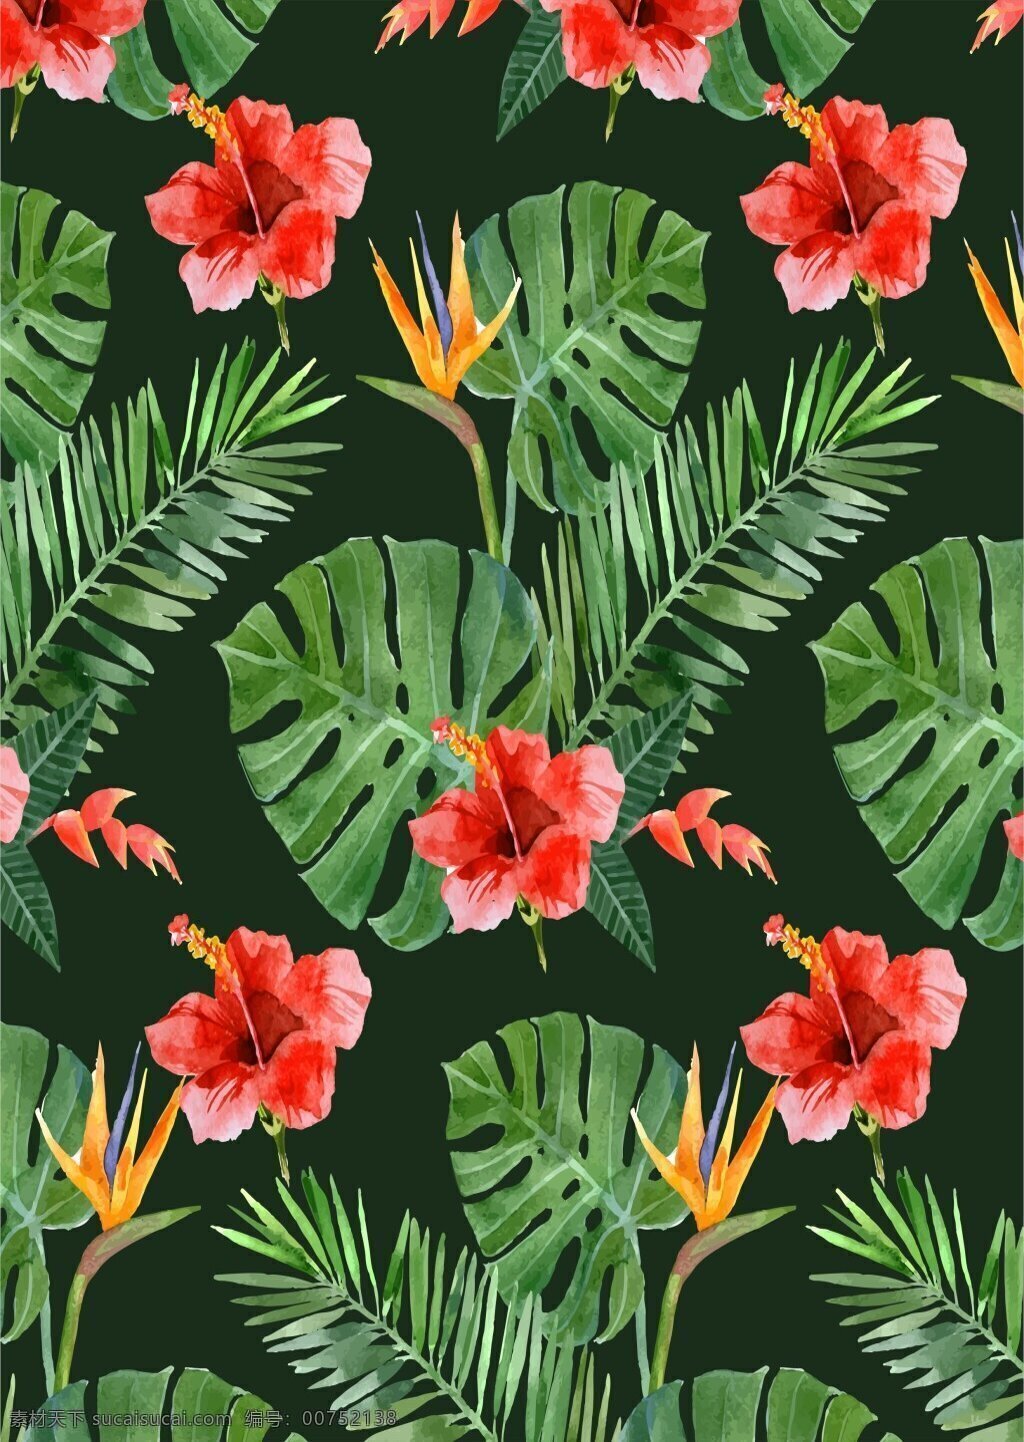 热带 风情 大 树叶 植物 广告 背景 橙红色花朵 大树叶 广告背景 深绿色底纹 植物花卉